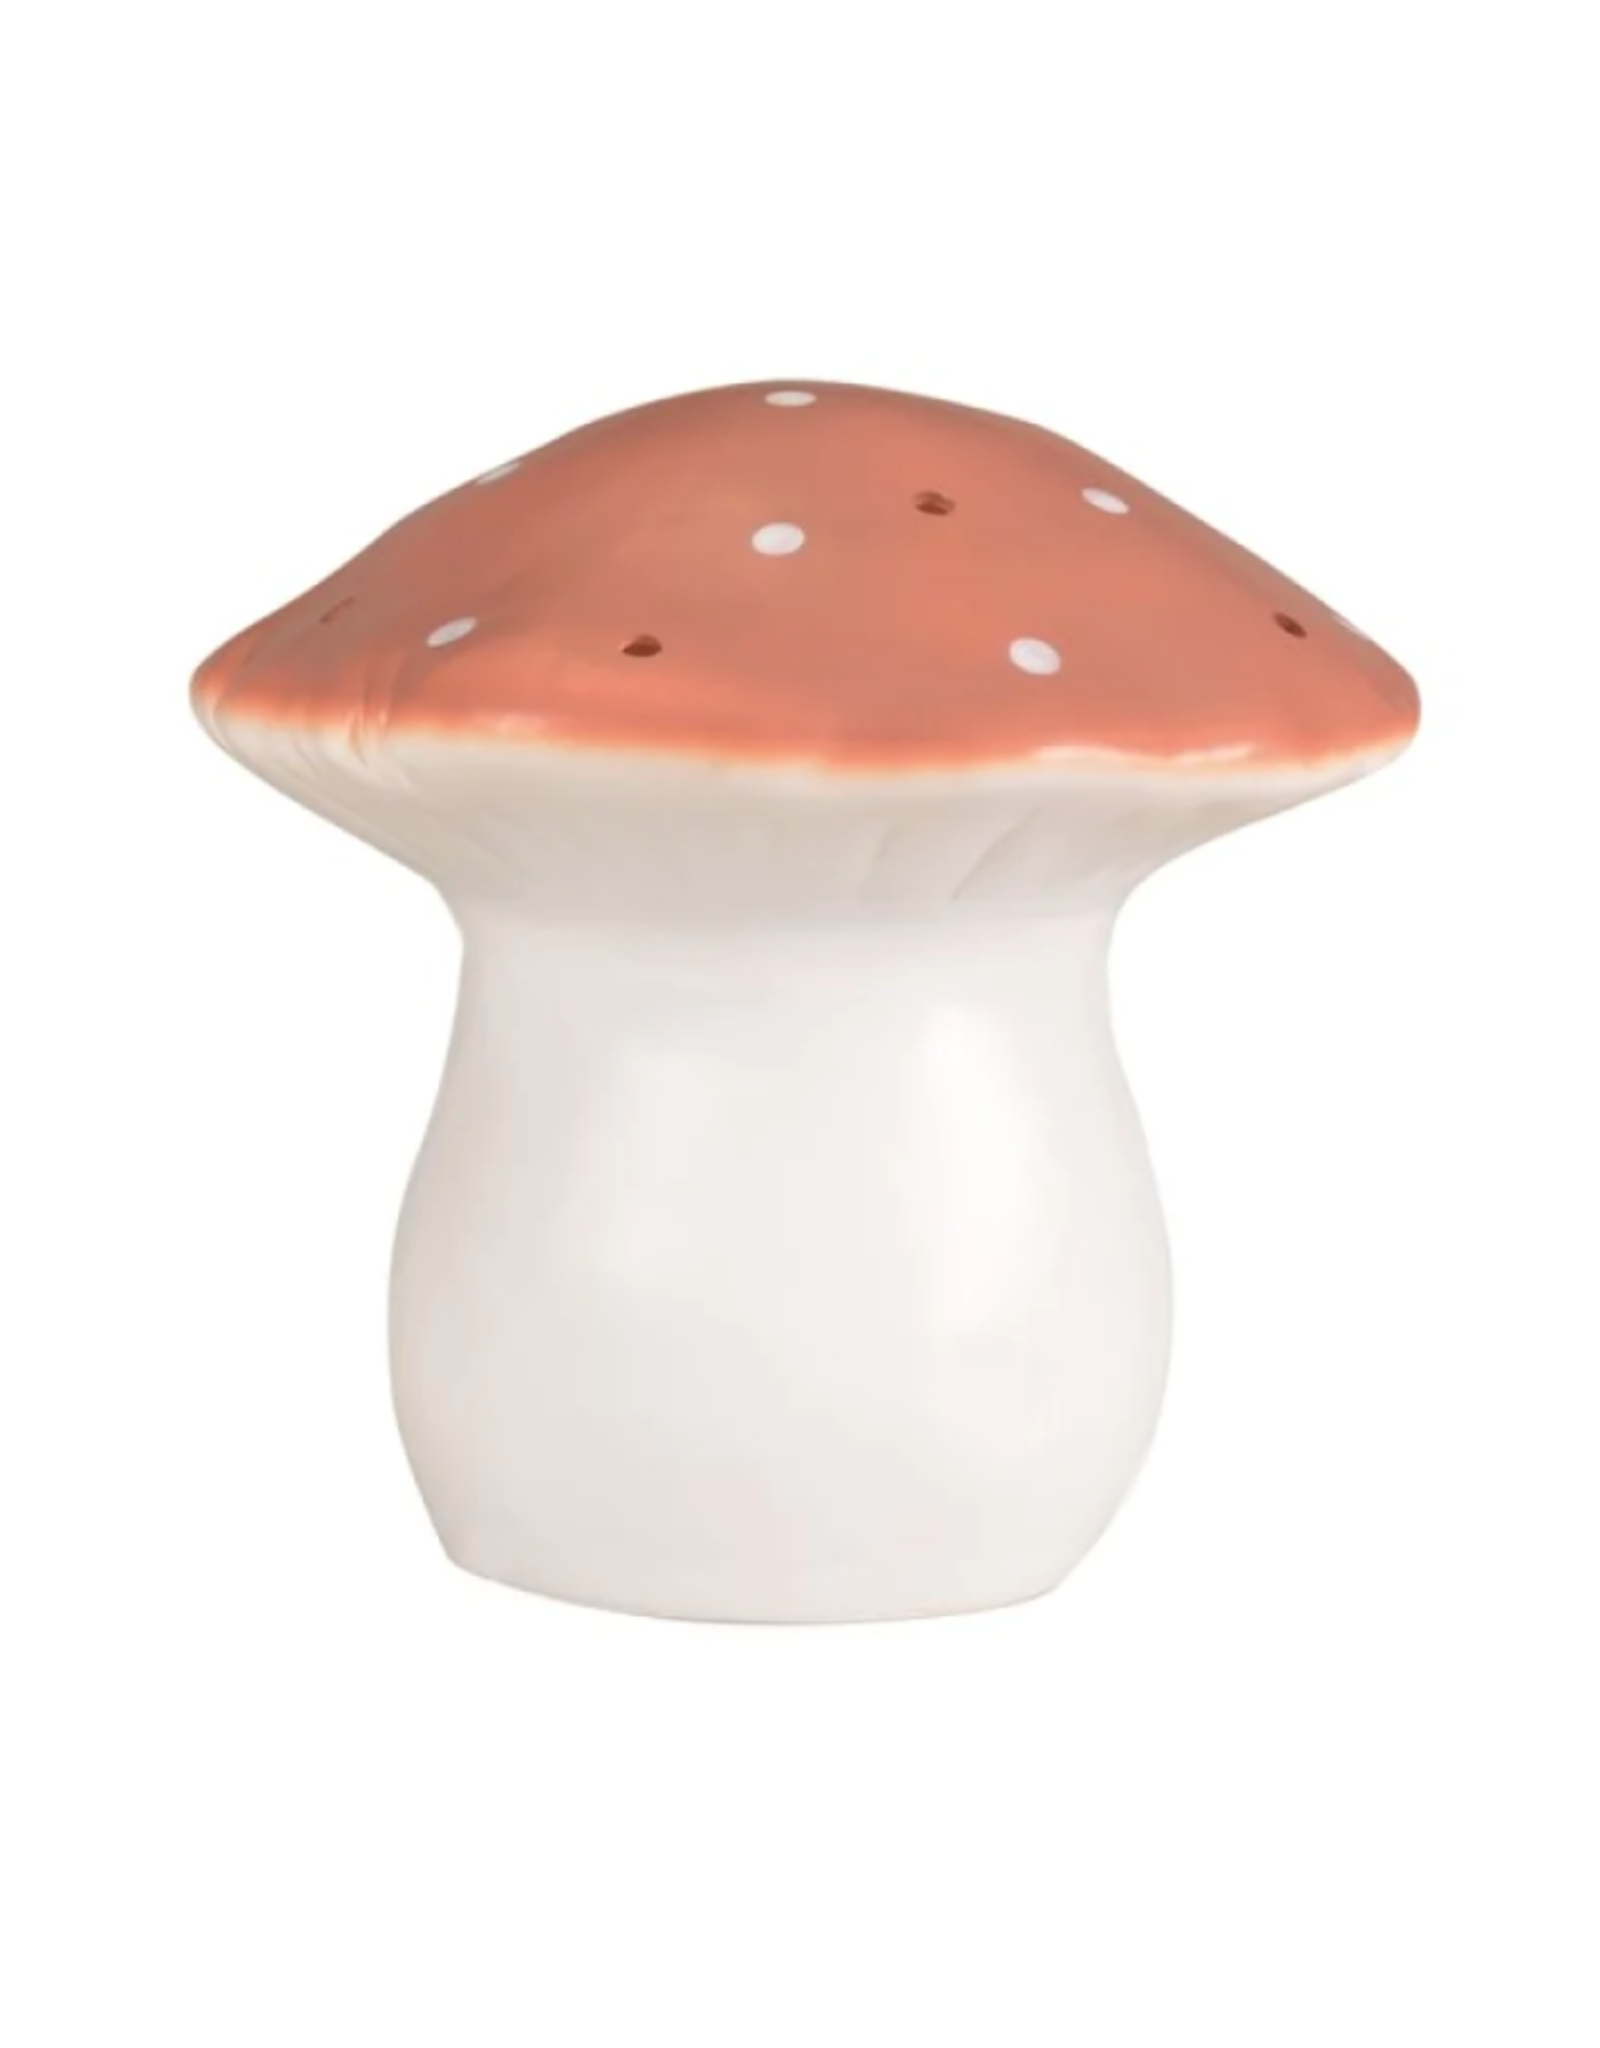 Egmont Lamp, Big Mushroom Terra w/Plug